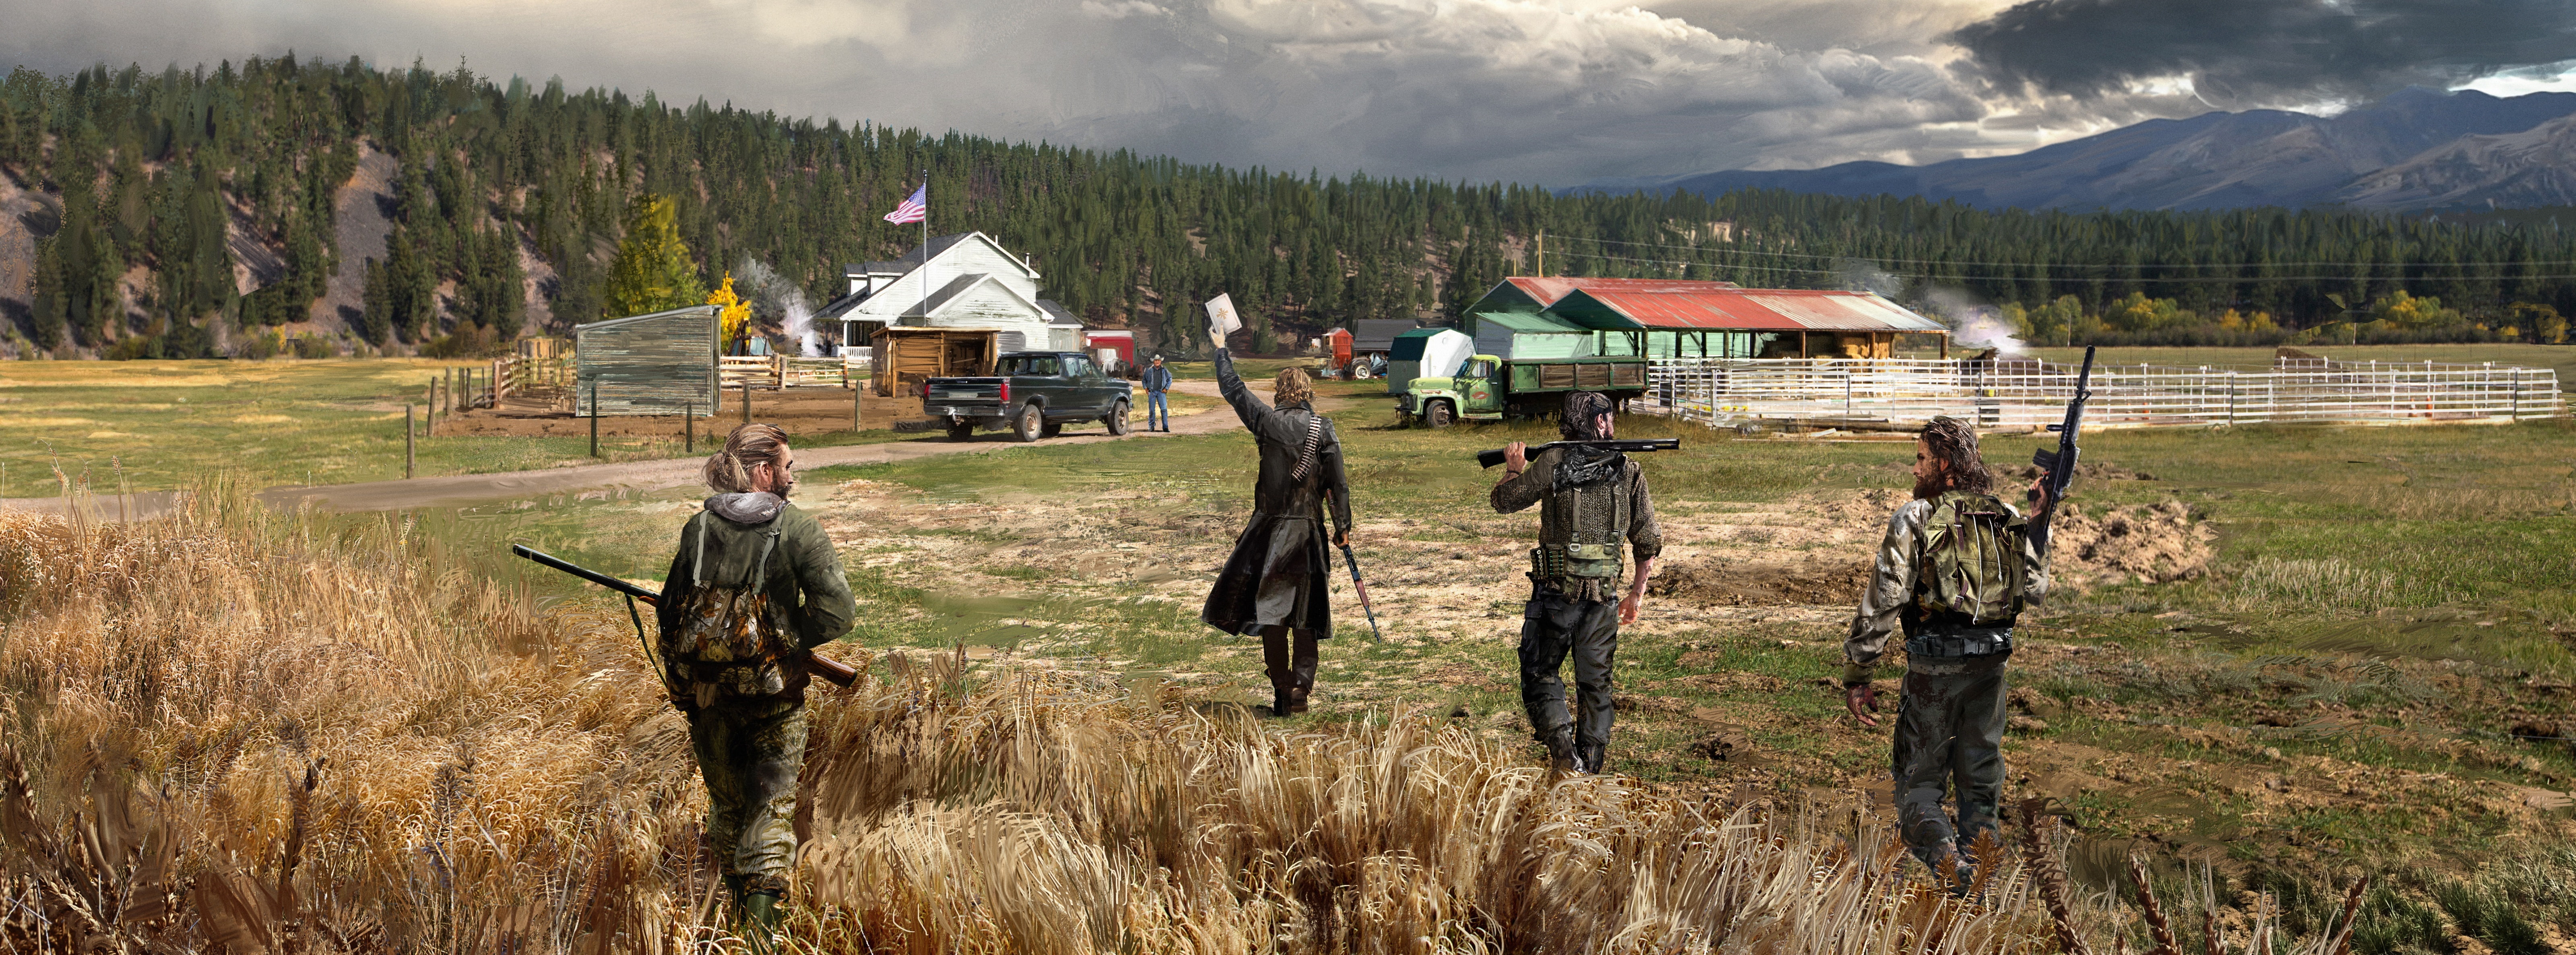 Far Cry 5 Concept Art, Games, Nature, Landscape, Farm, Montana